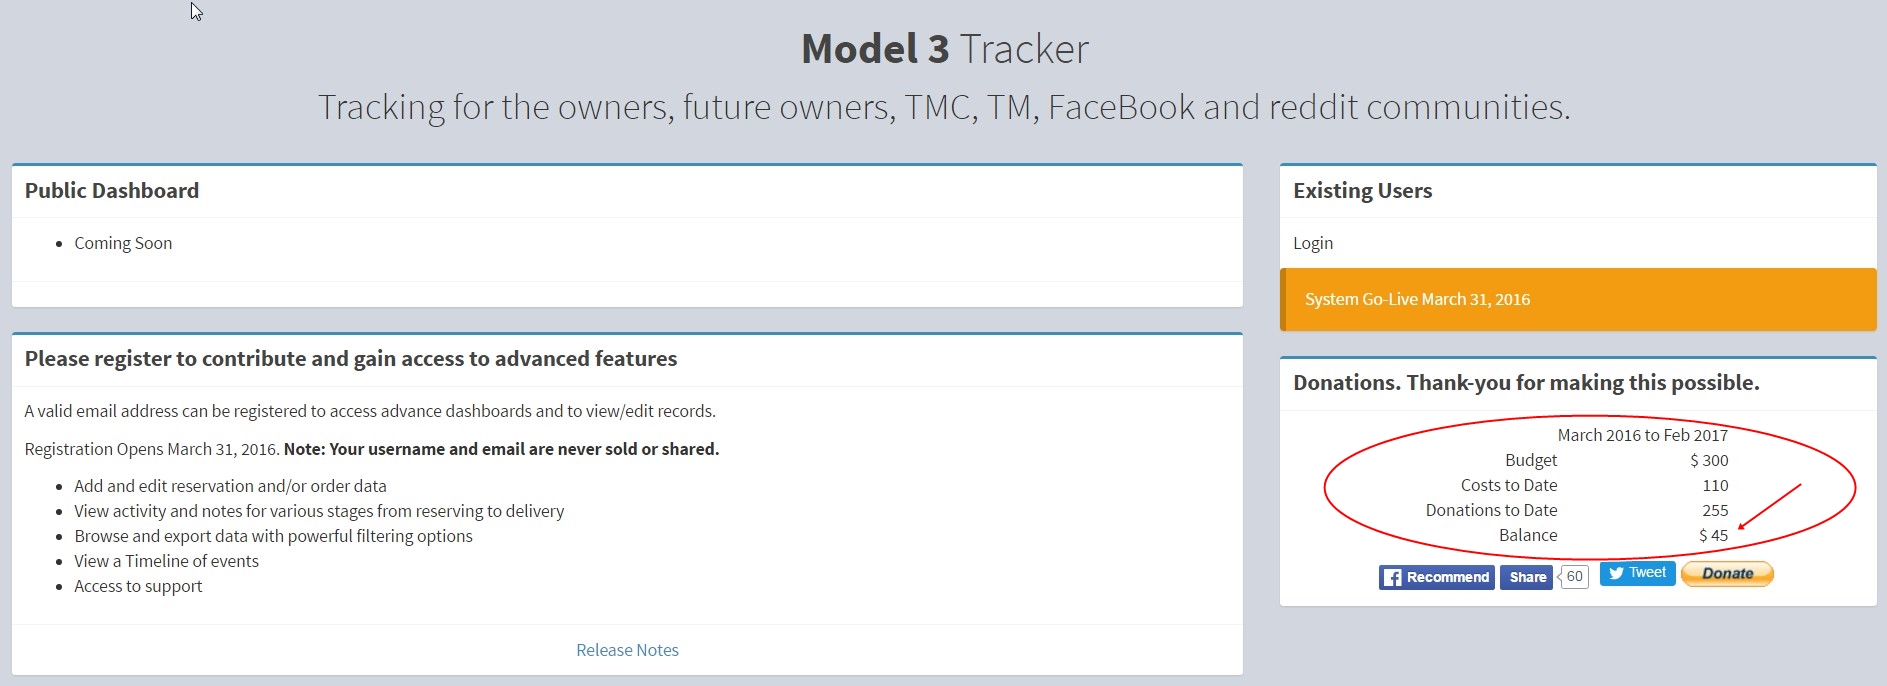 Model 3 Tracker.jpg